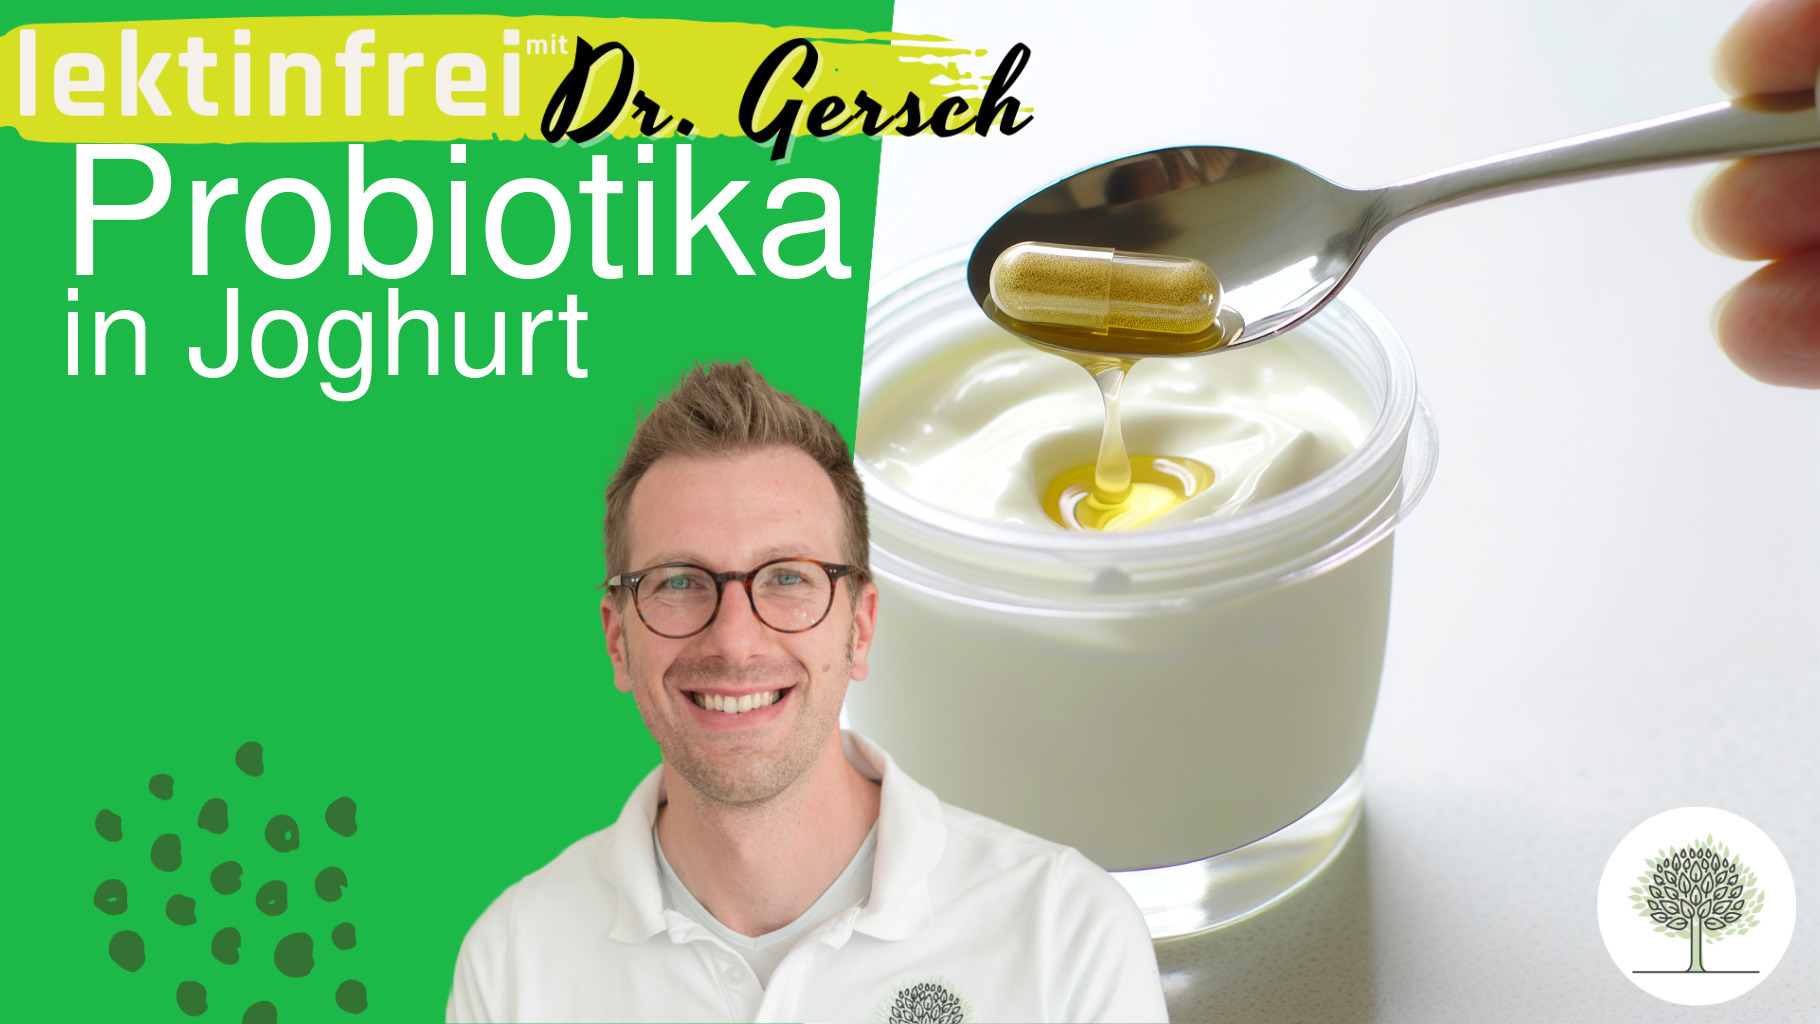 Probiotika in Joghurt vermehren - eine gute Idee?